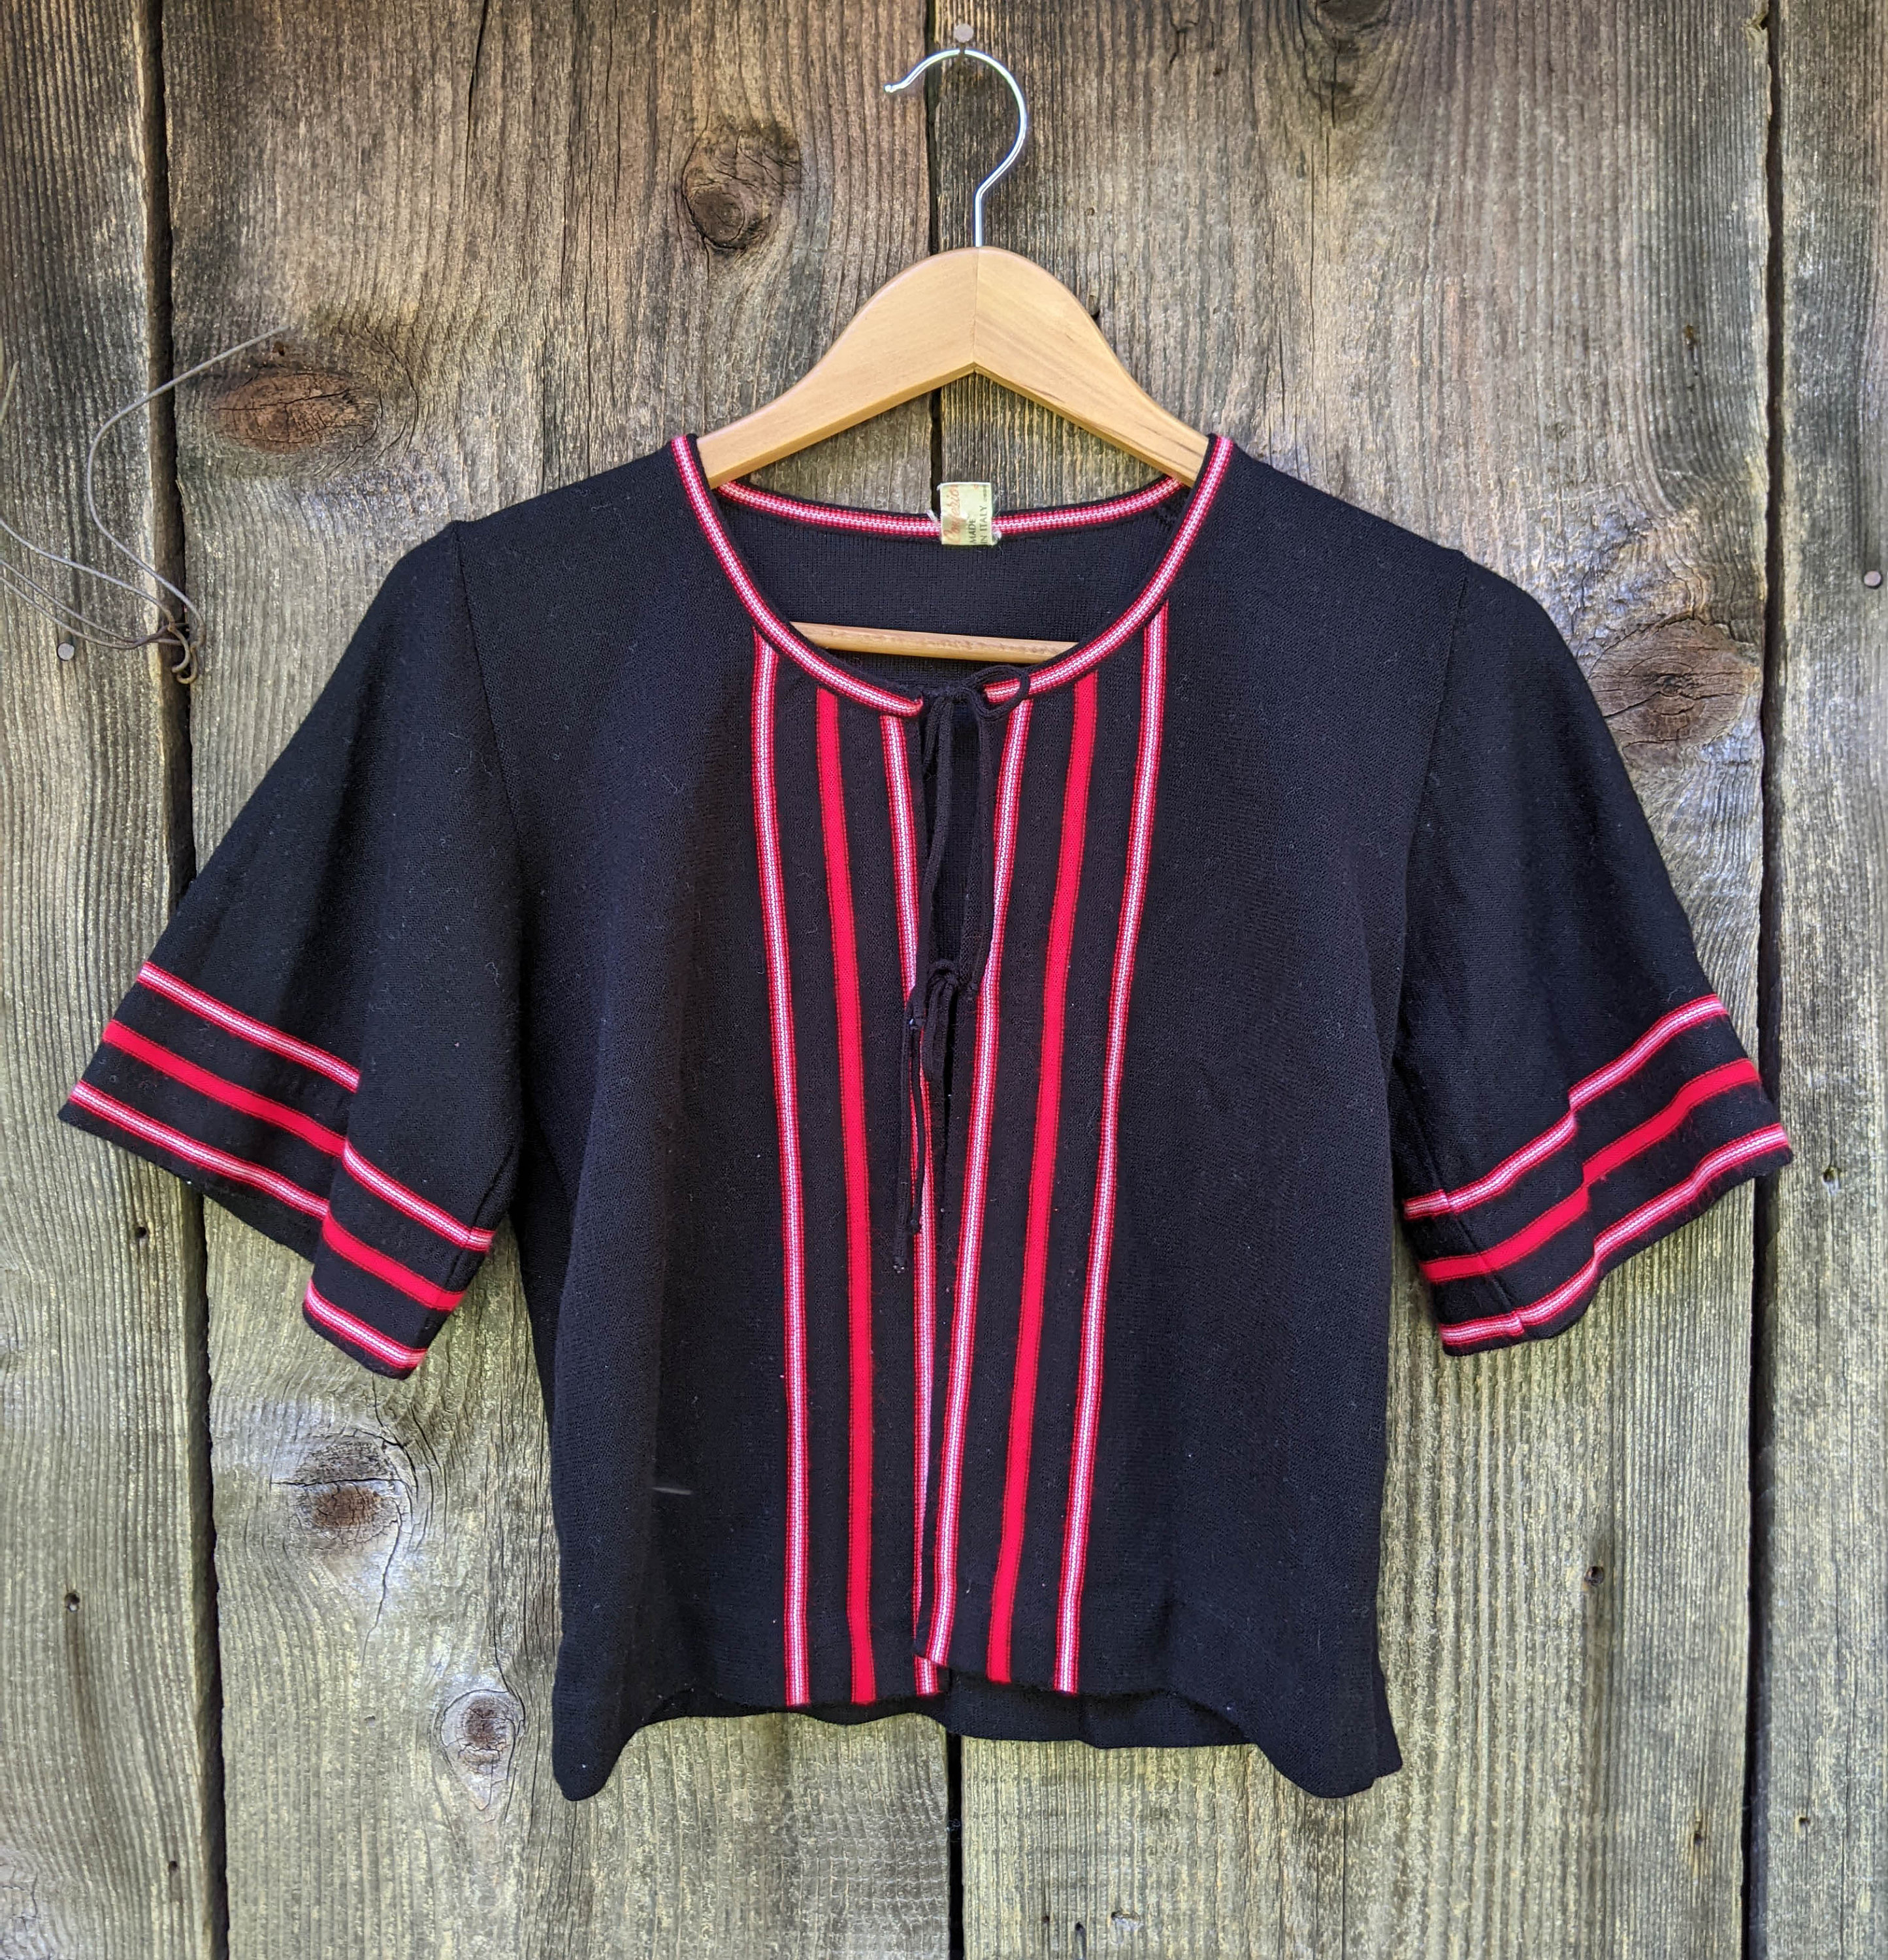 Kleding Dameskleding Tops & T-shirts Schouderbedekking & Boleros Jaren '90 Zwart bijgesneden jas Hippie bolero met franje Maat Medium 